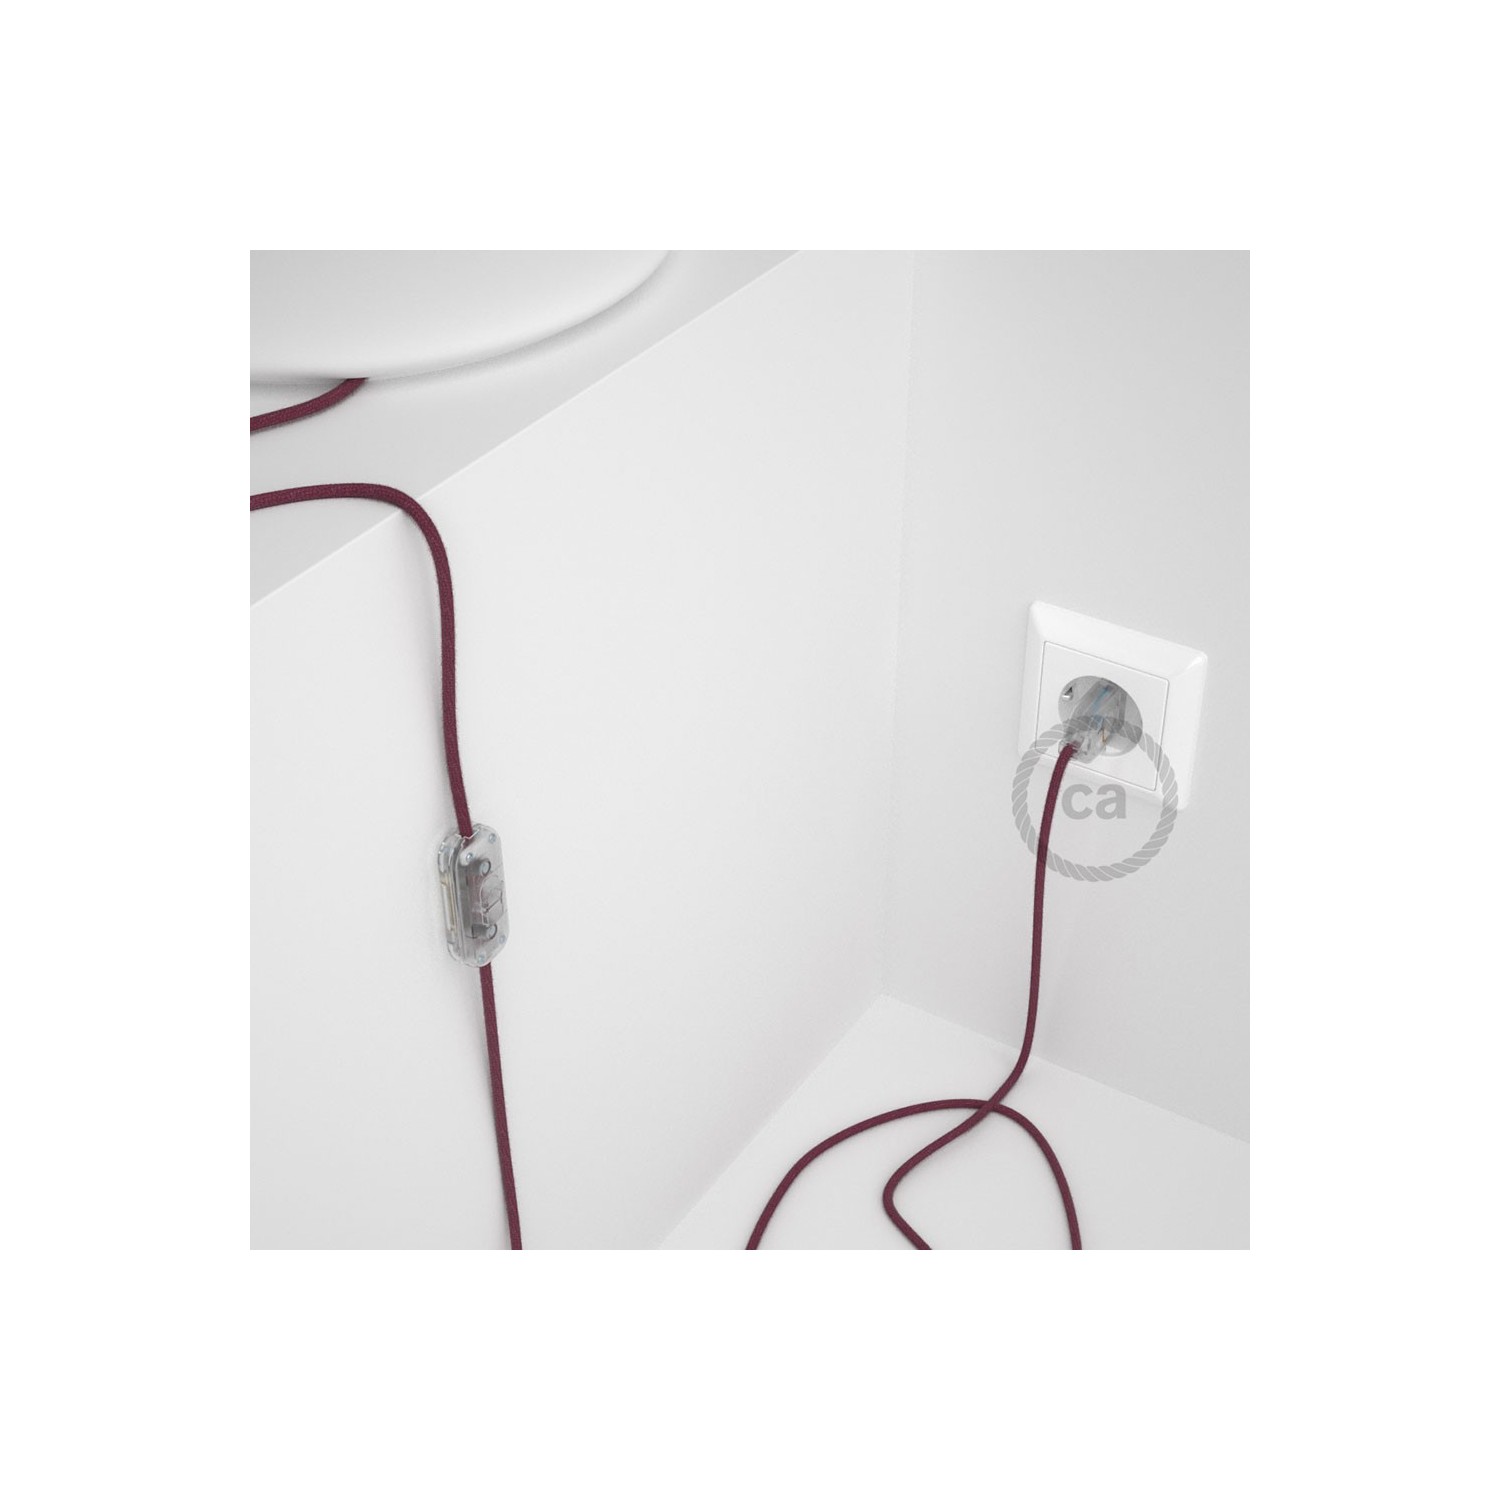 Napájací kábel pre stolnú lampu, RC32 Bordový bavlnený 1,80 m. Vyberte si farbu zástrčky a vypínača.